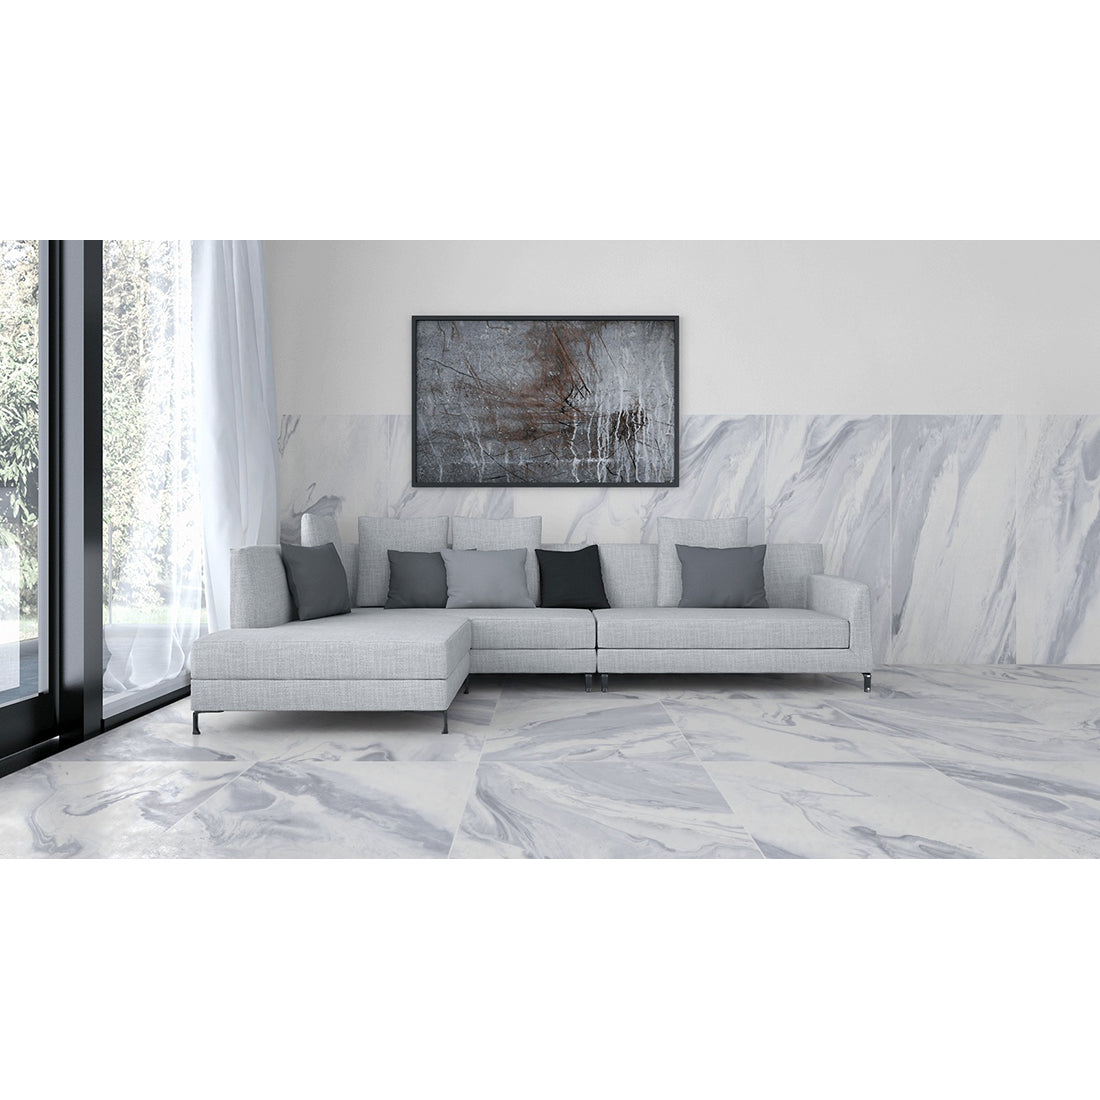 Smoky 60x120 Grey Polished Wall and Floor Tile